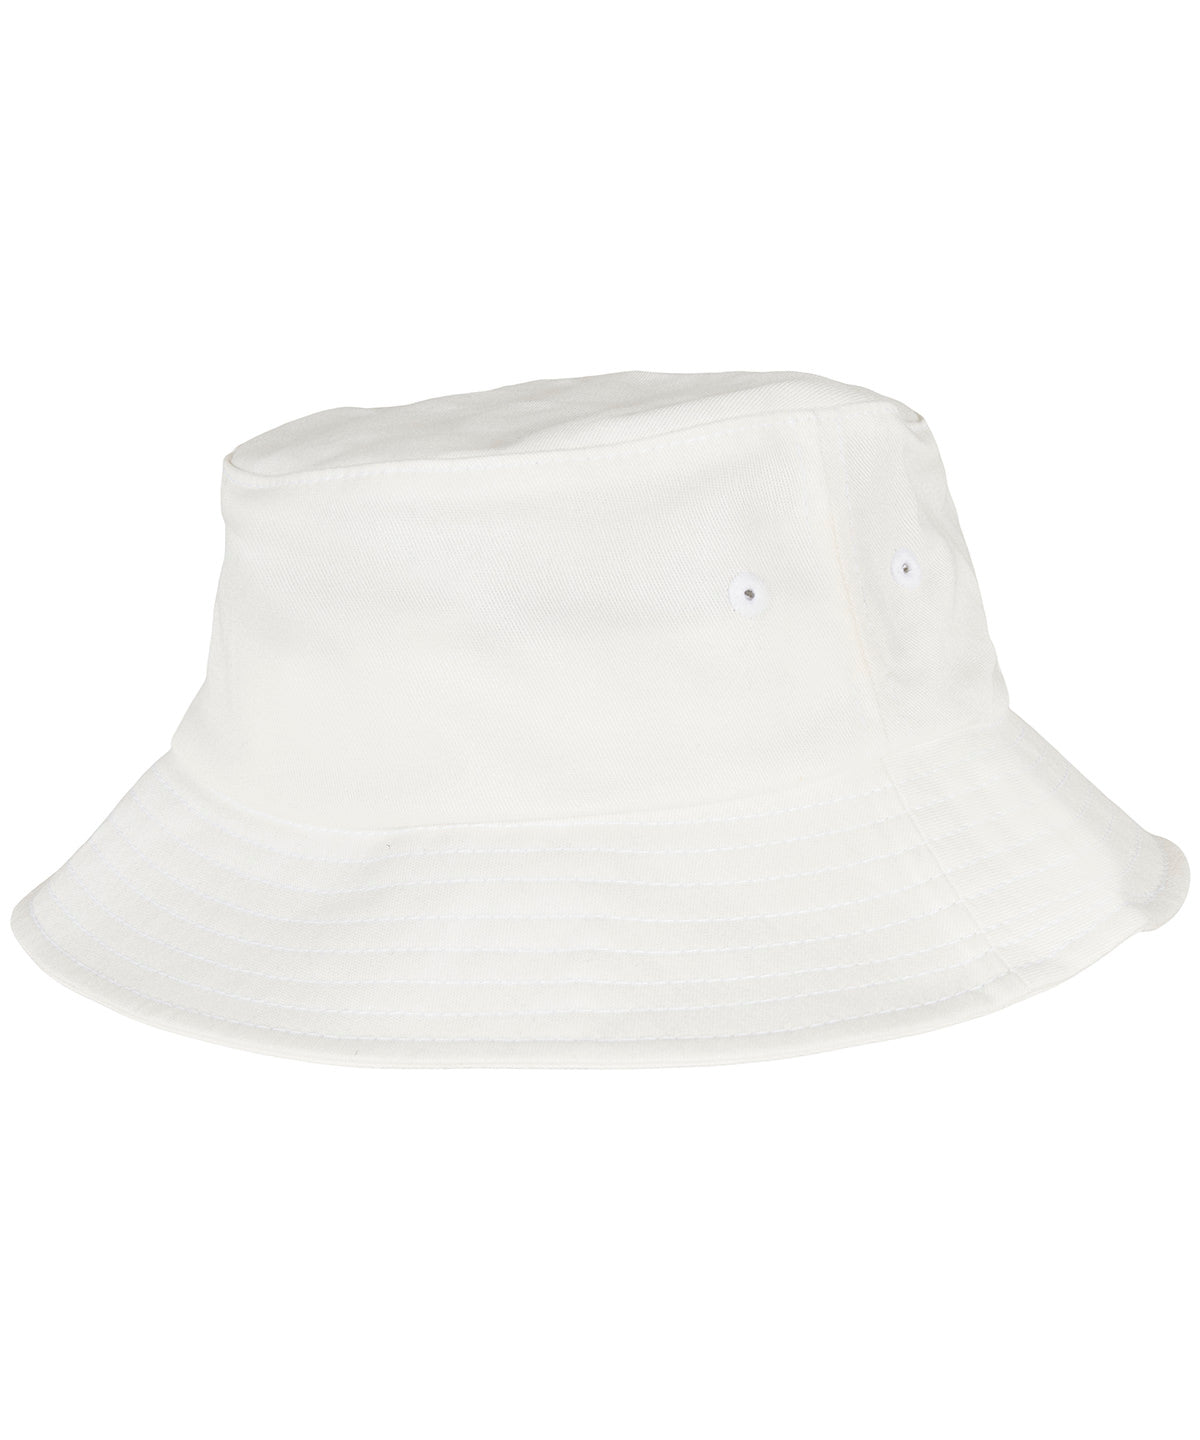 Húfur - Kids Flexfit Cotton Twill Bucket Hat